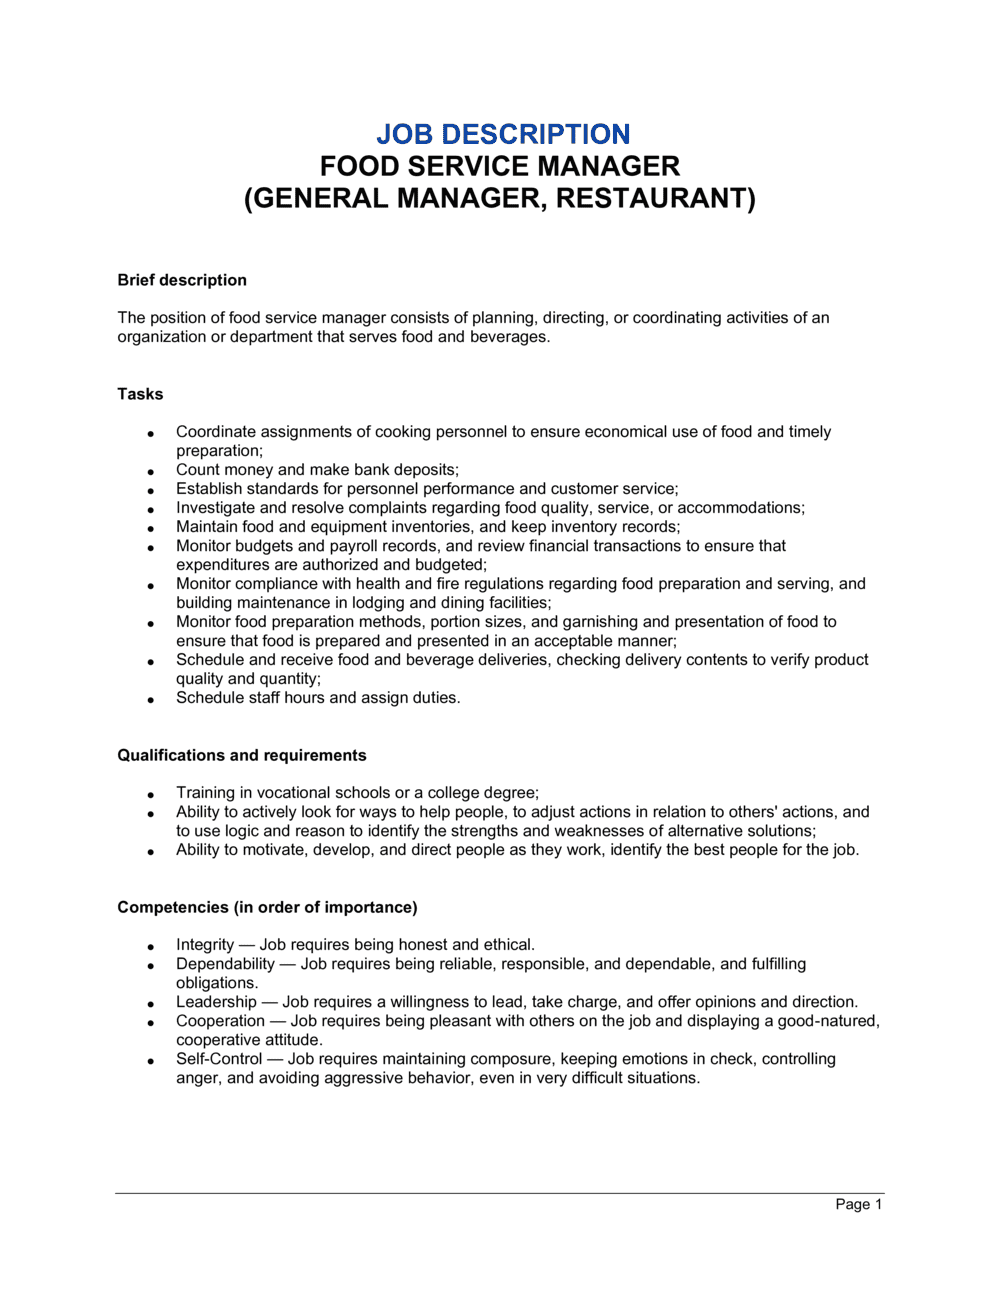 Food Service Manager General Manager Restaurant Job Description D11658 